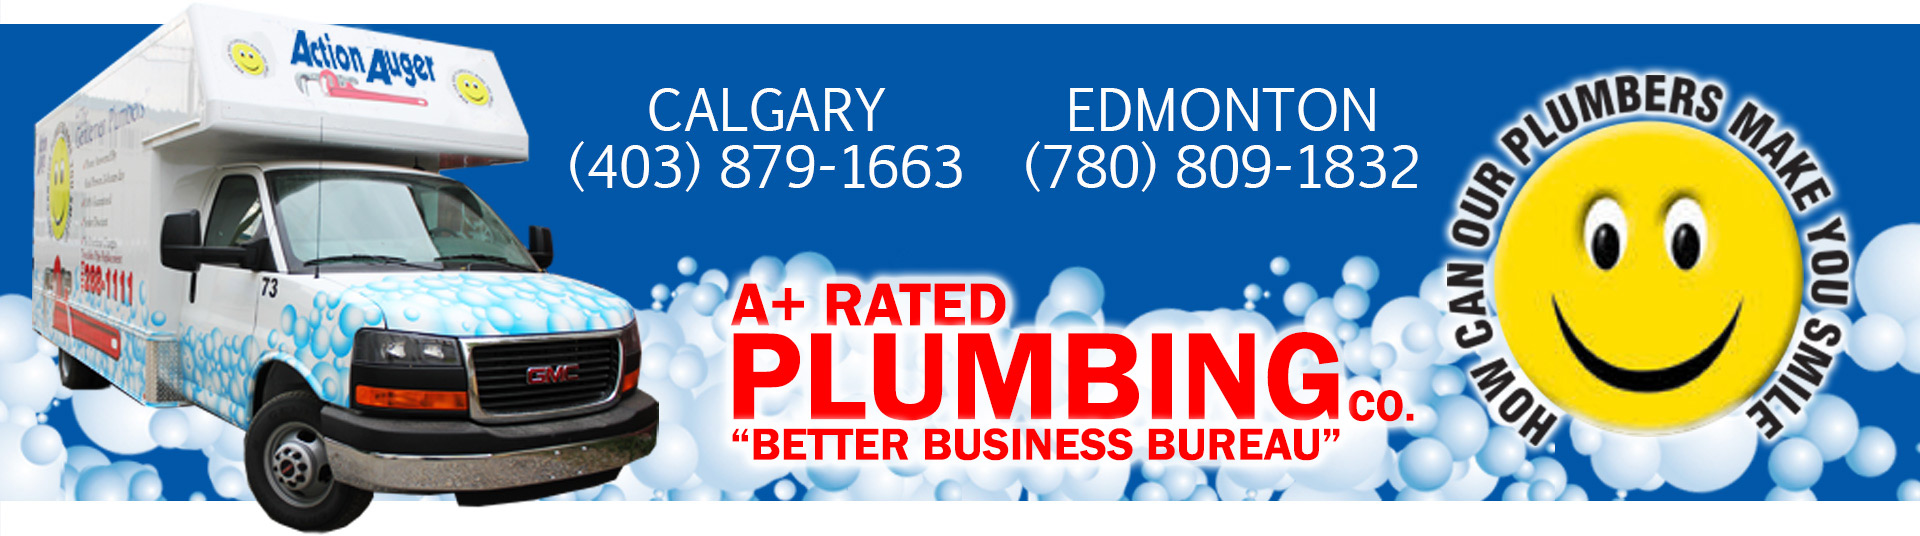 The Gentlemen Plumbers - Your Local Edmonton Plumbing Company